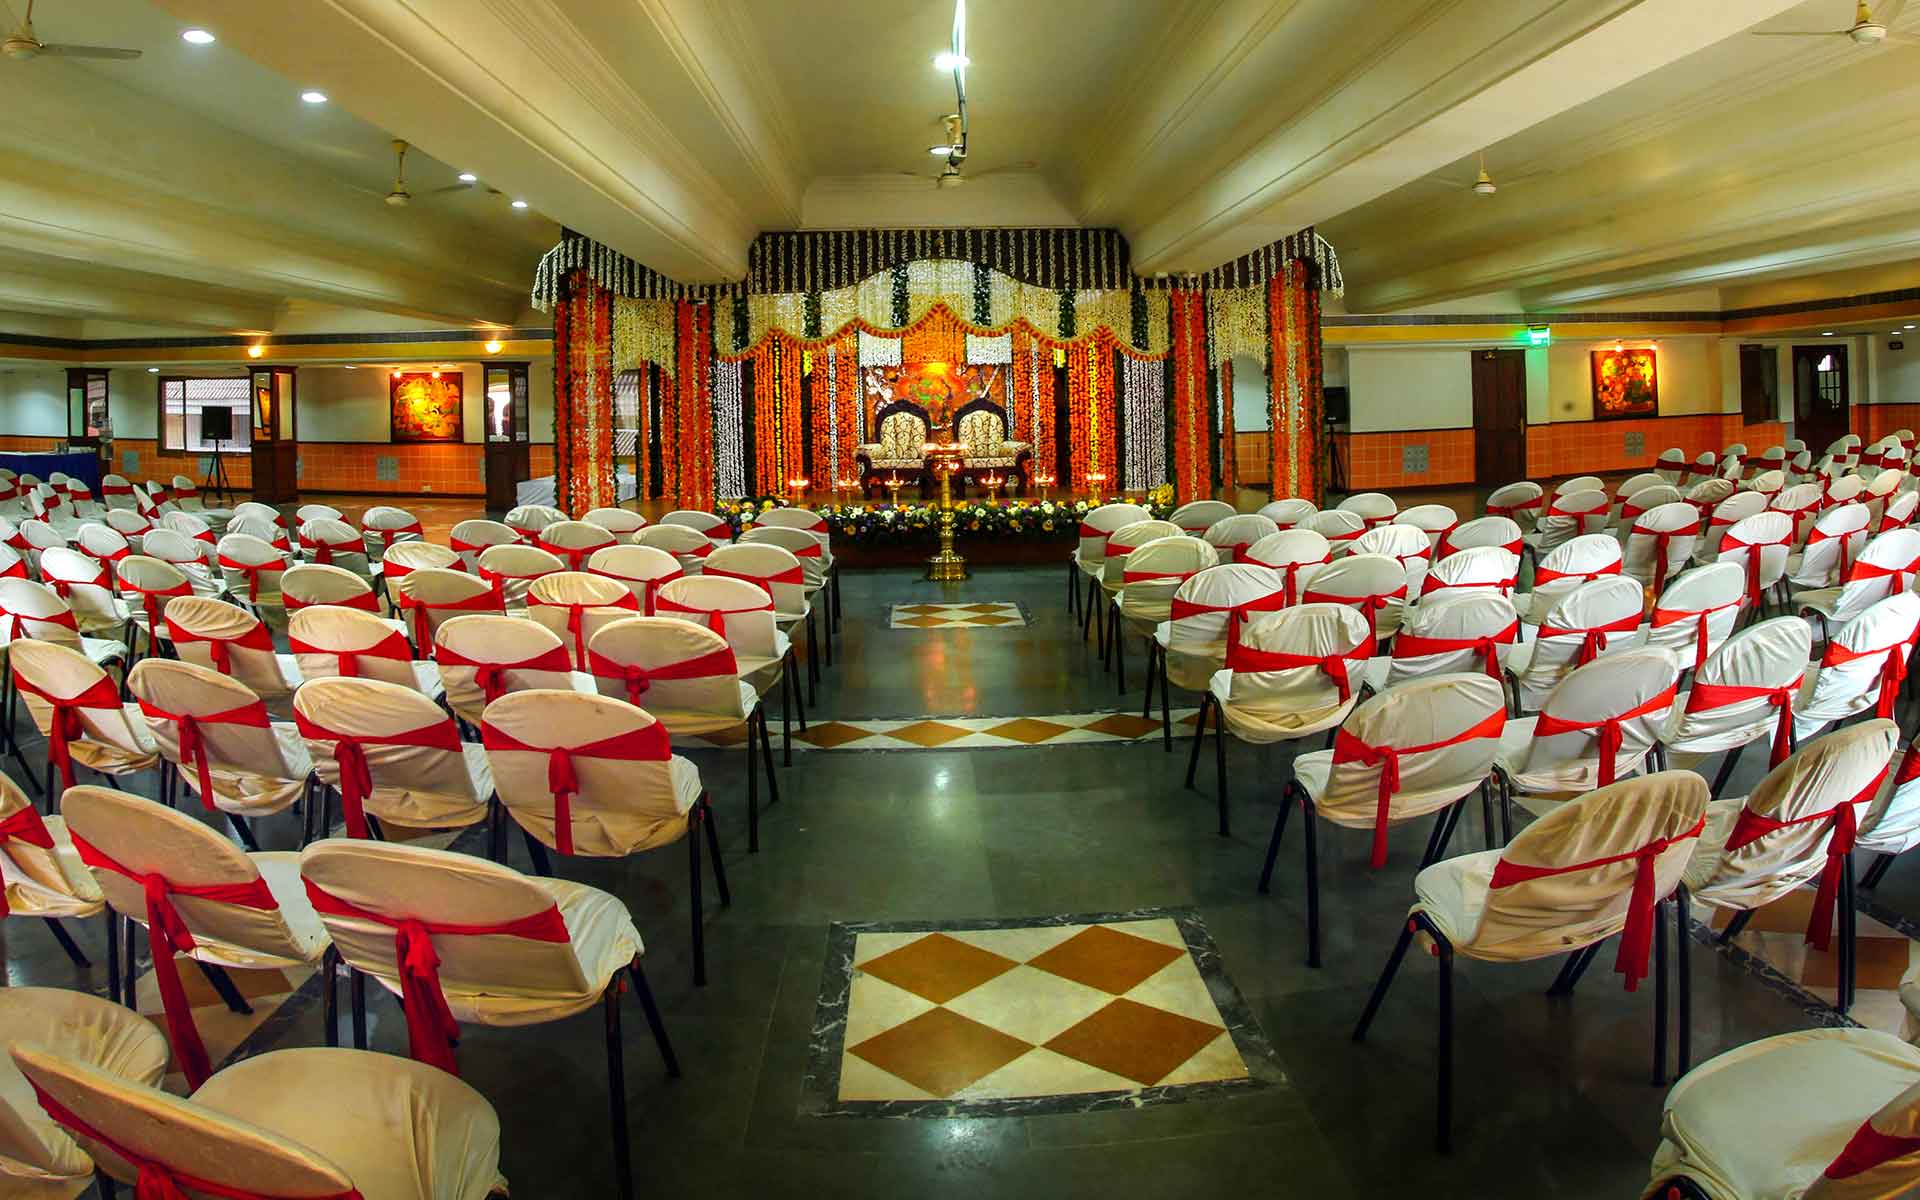 Krishna Inn facilities: 